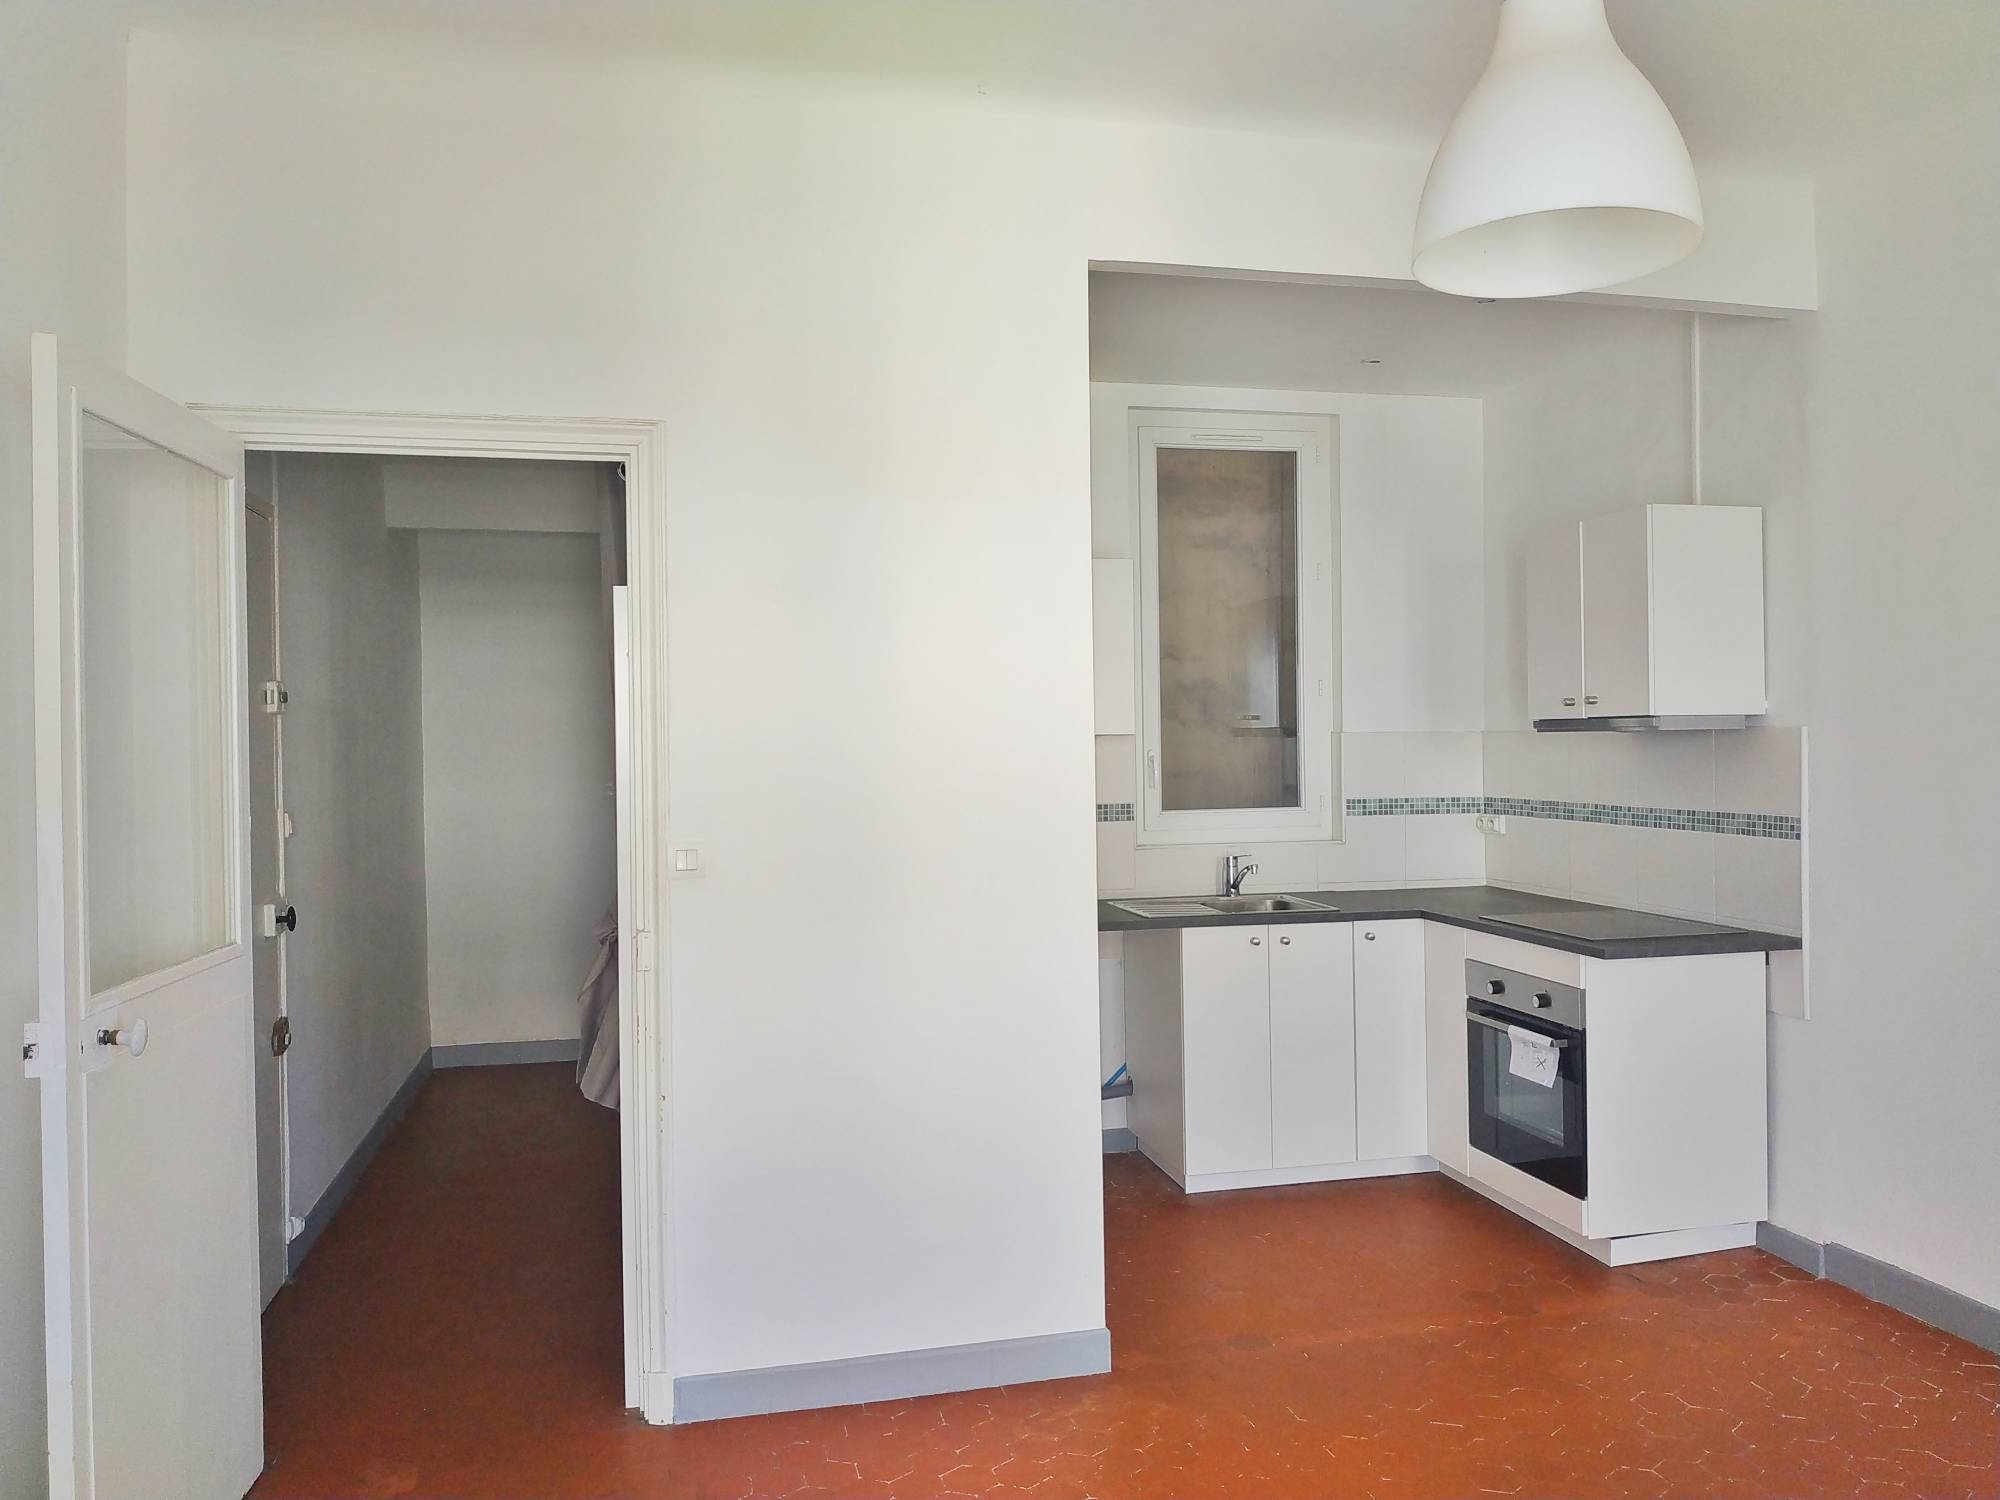 A vendre appartement 2 pièces de 42 m² rénové quartier Joliette 13002 Marseille  - Investissement locatif 